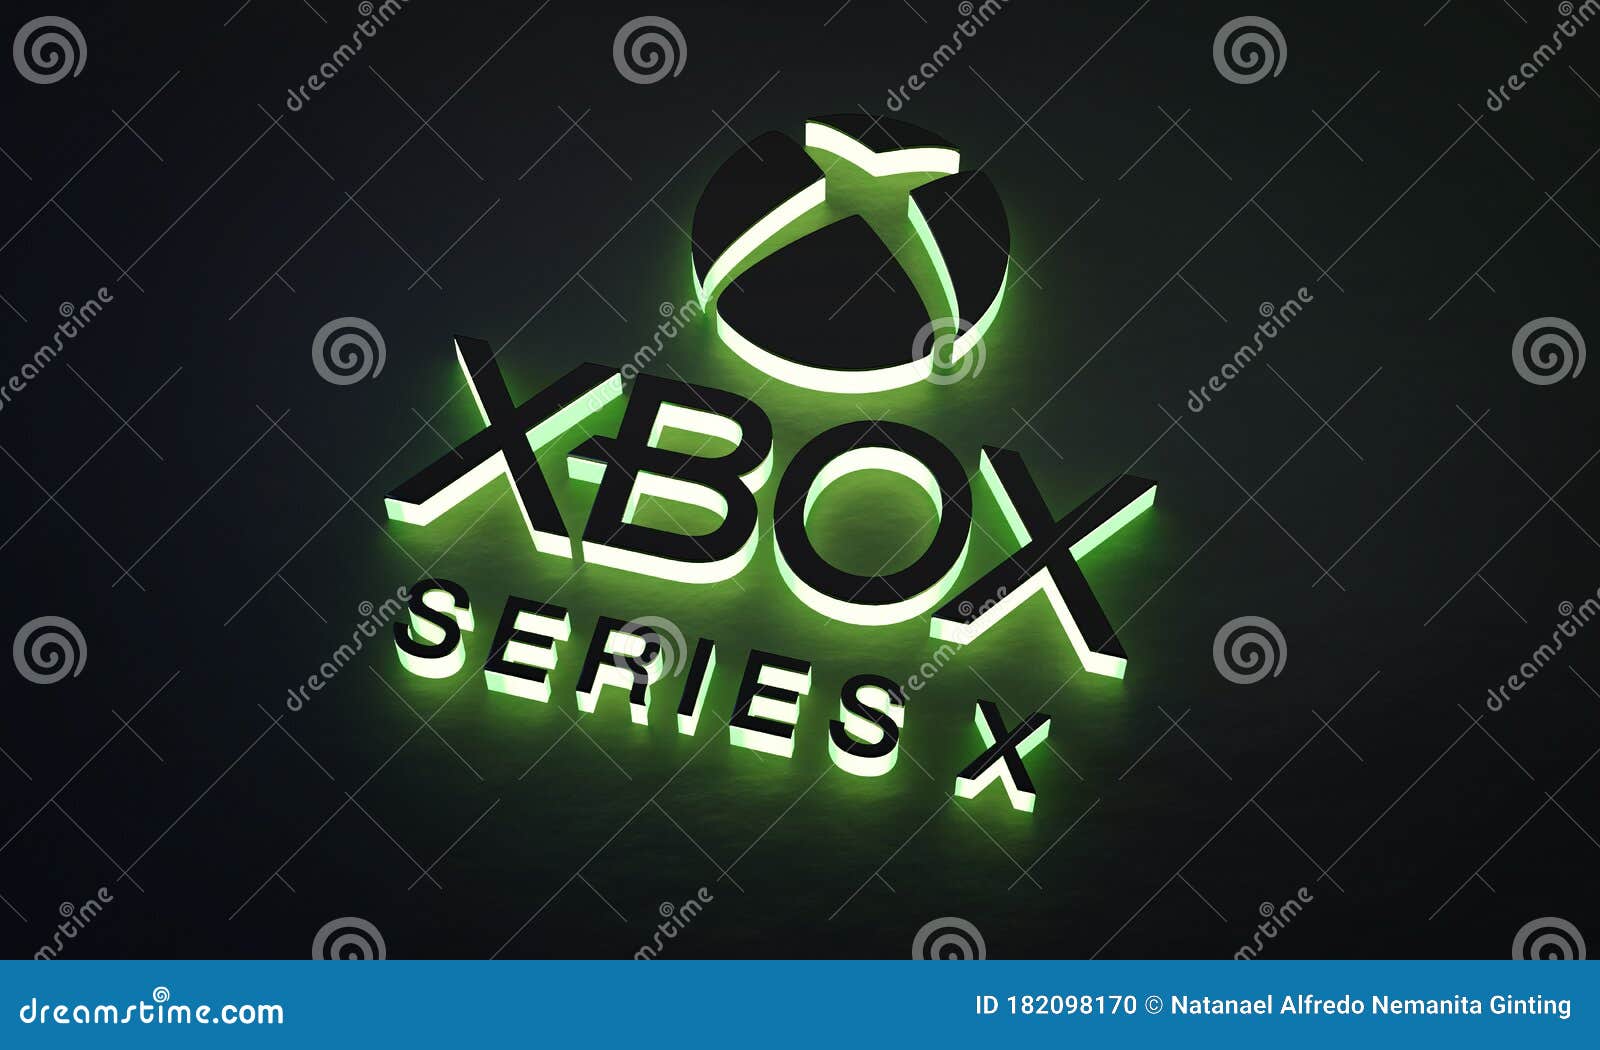 Xbox Series X Green Glow Logo: Biểu tượng Xbox Series X với ánh sáng xanh đặc trưng của mình sẽ khiến người chơi cảm thấy hào hứng và phấn khích. Làm quen với Xbox Series X Green Glow Logo và cảm nhận sự khác biệt khi sử dụng phiên bản mới nhất của máy chơi game console.